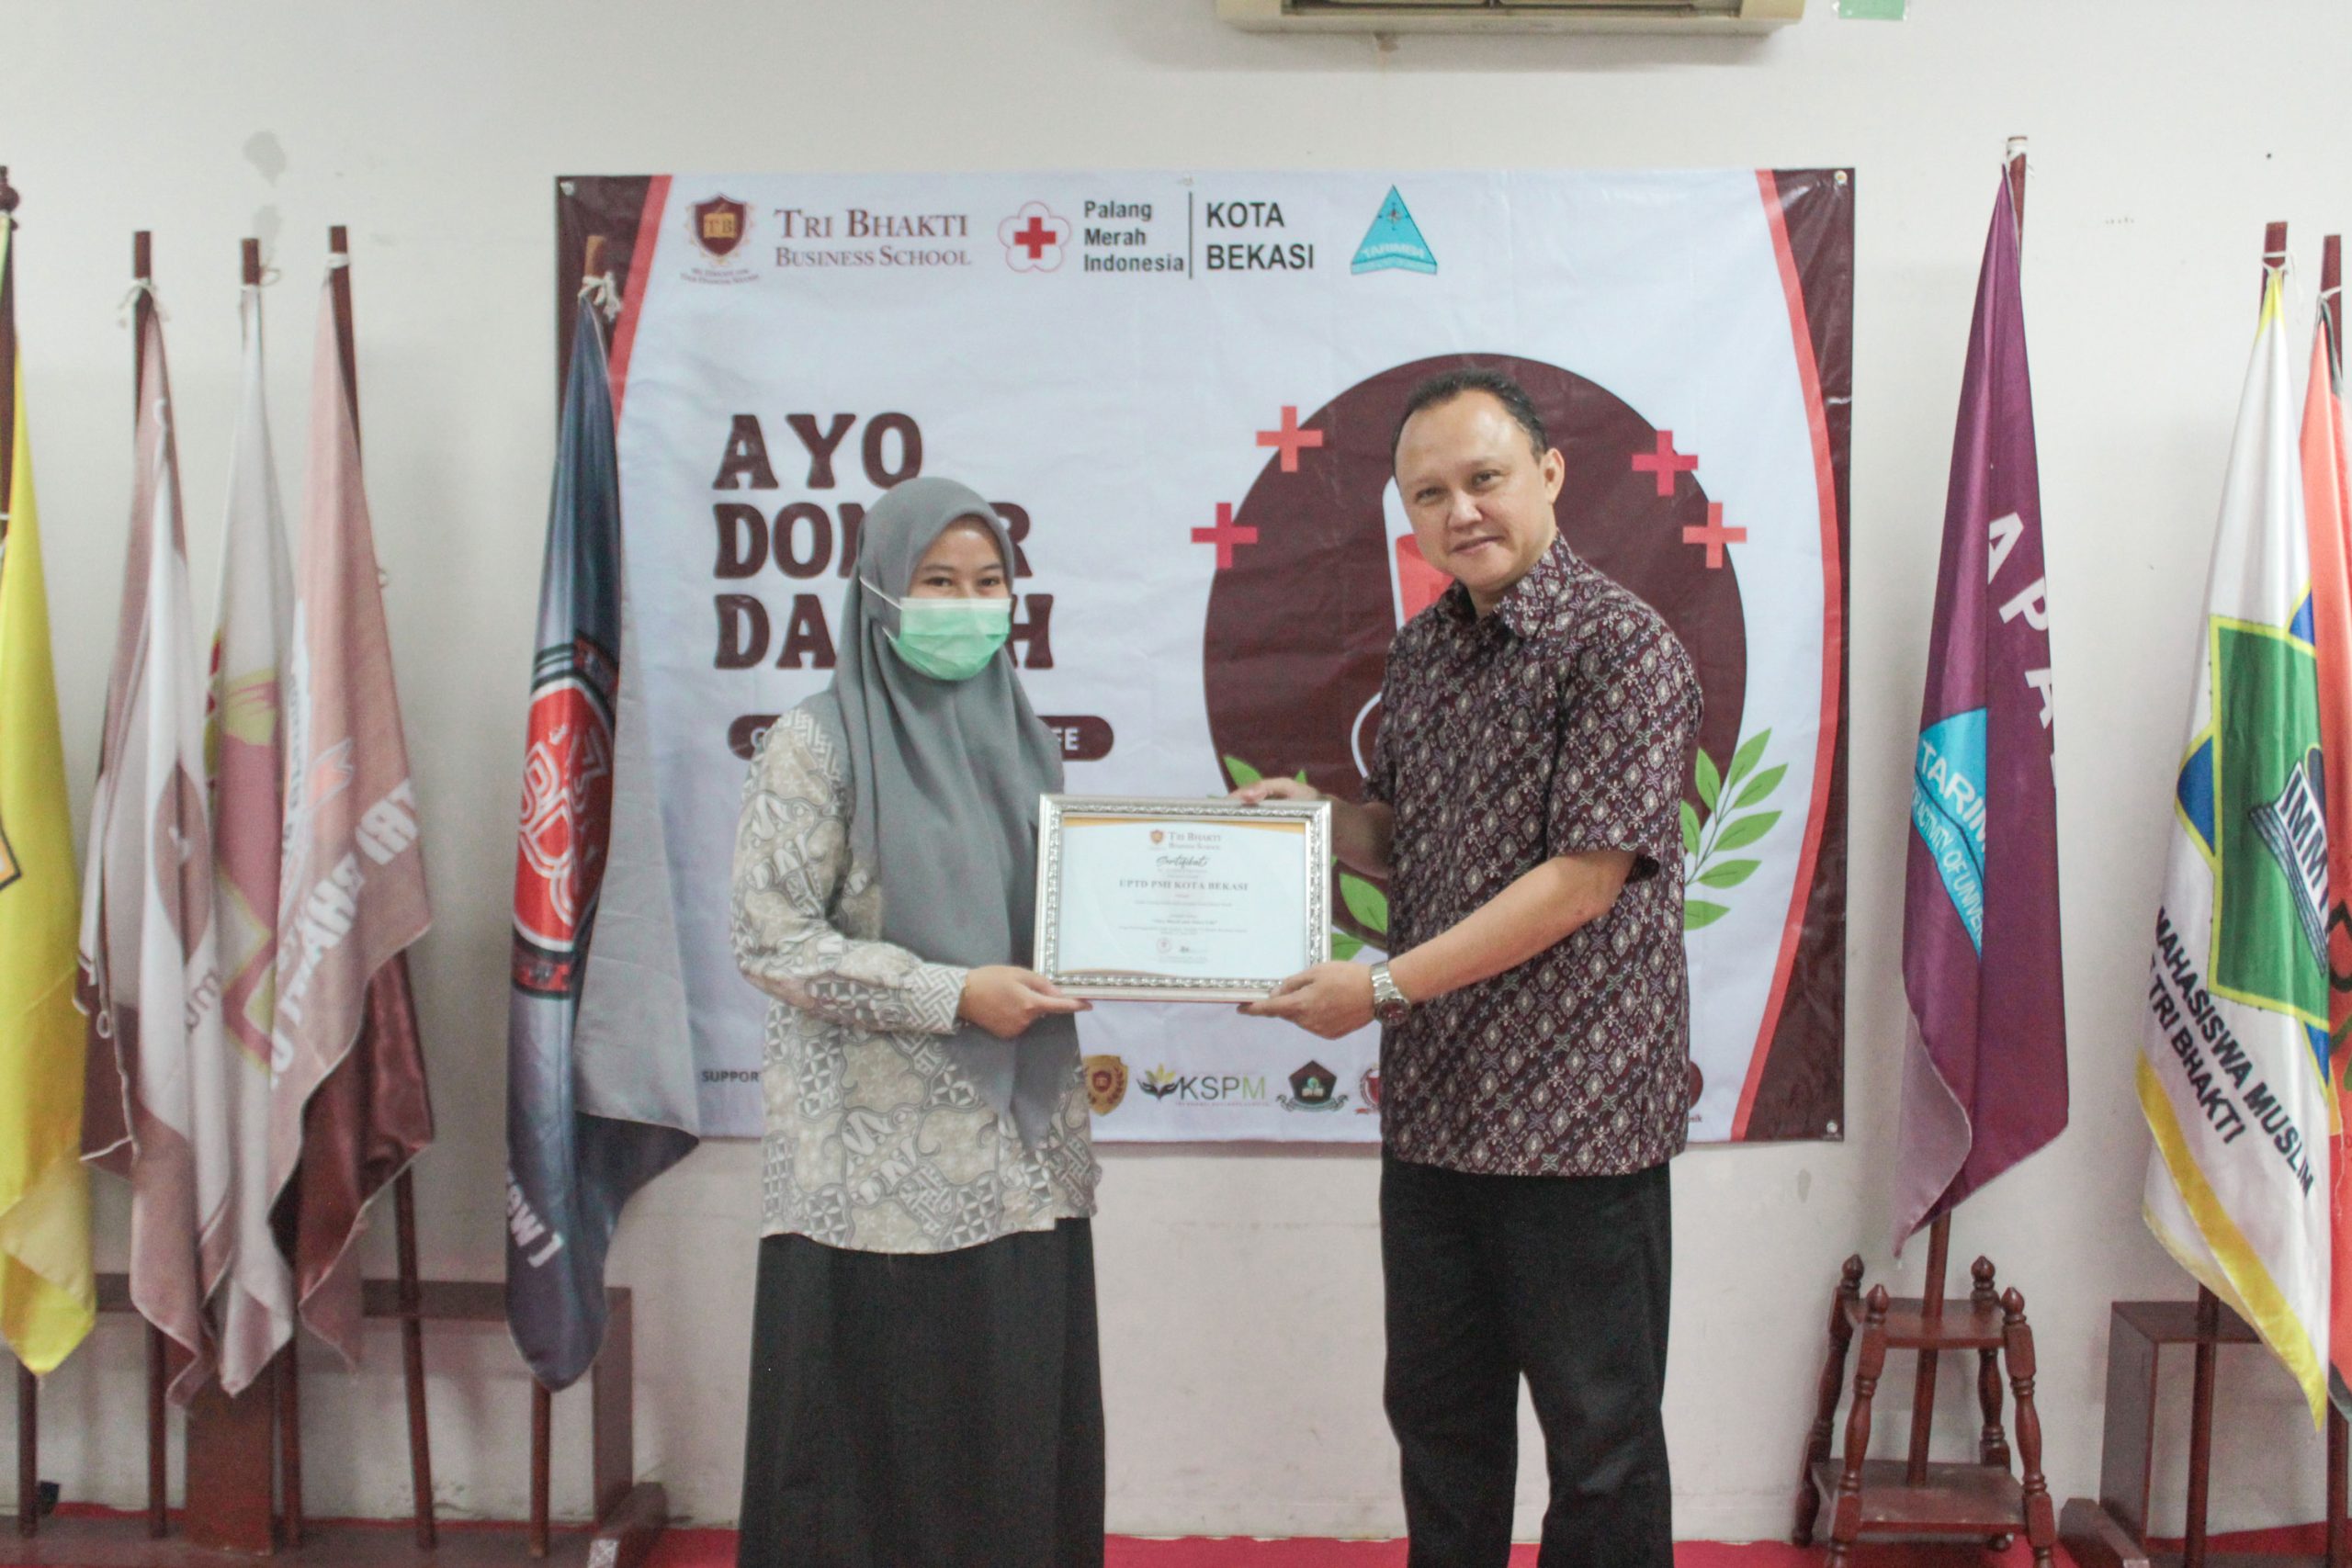 Regina dari Palang Merah Indonesia Kota Bekasi menerima sertifikat dari Ir. Prillia Haliawan, MM selaku bagian kemahasiswaan Tri Bhakti